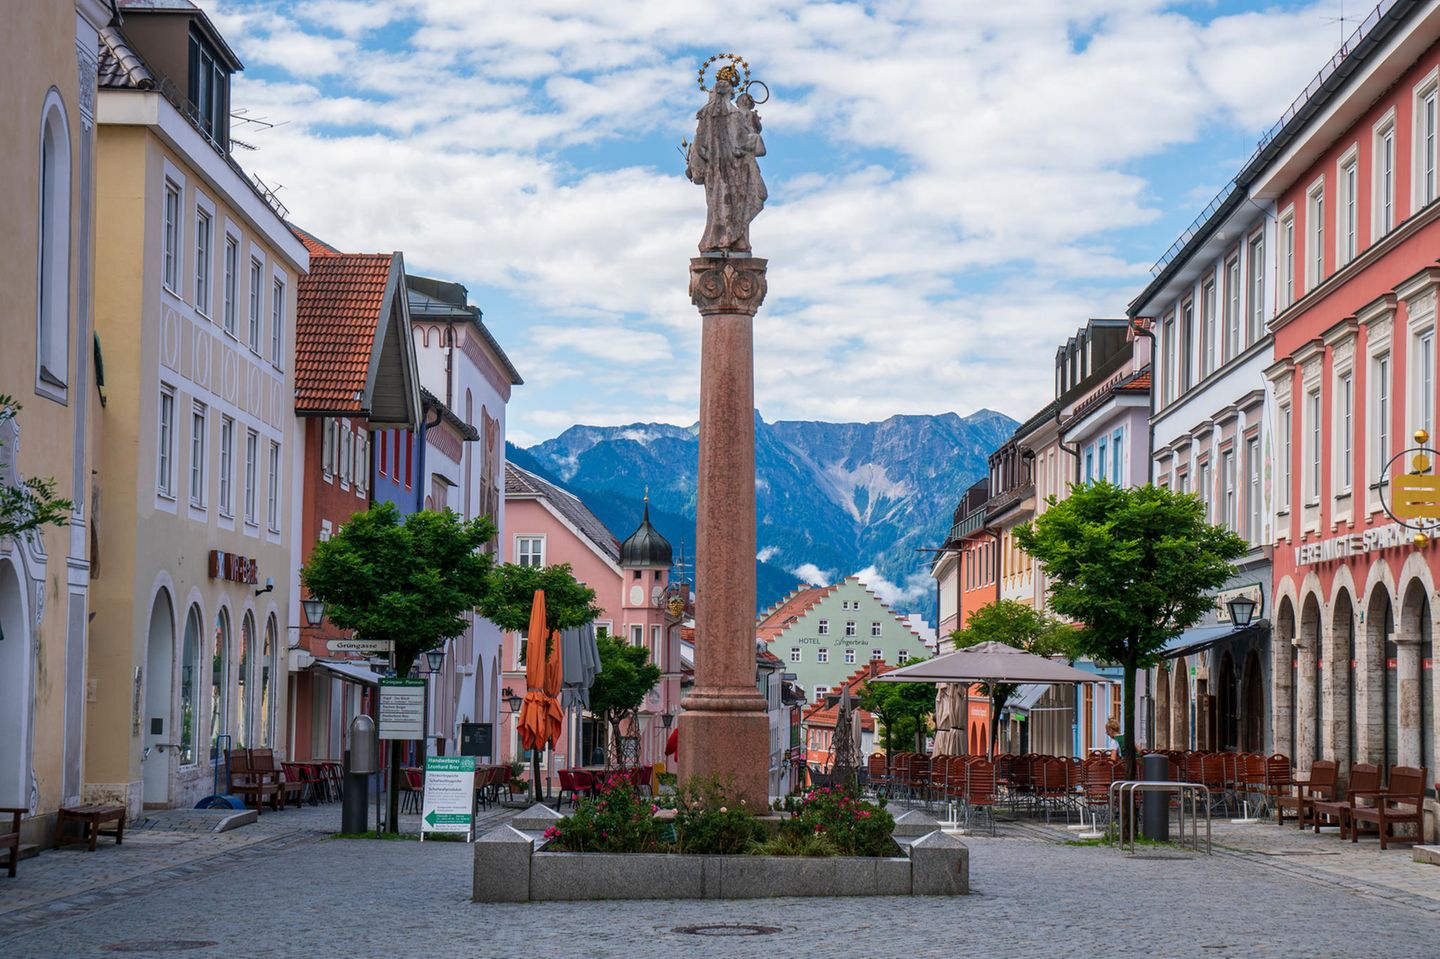 Altstadt von Murnau in Oberbayern